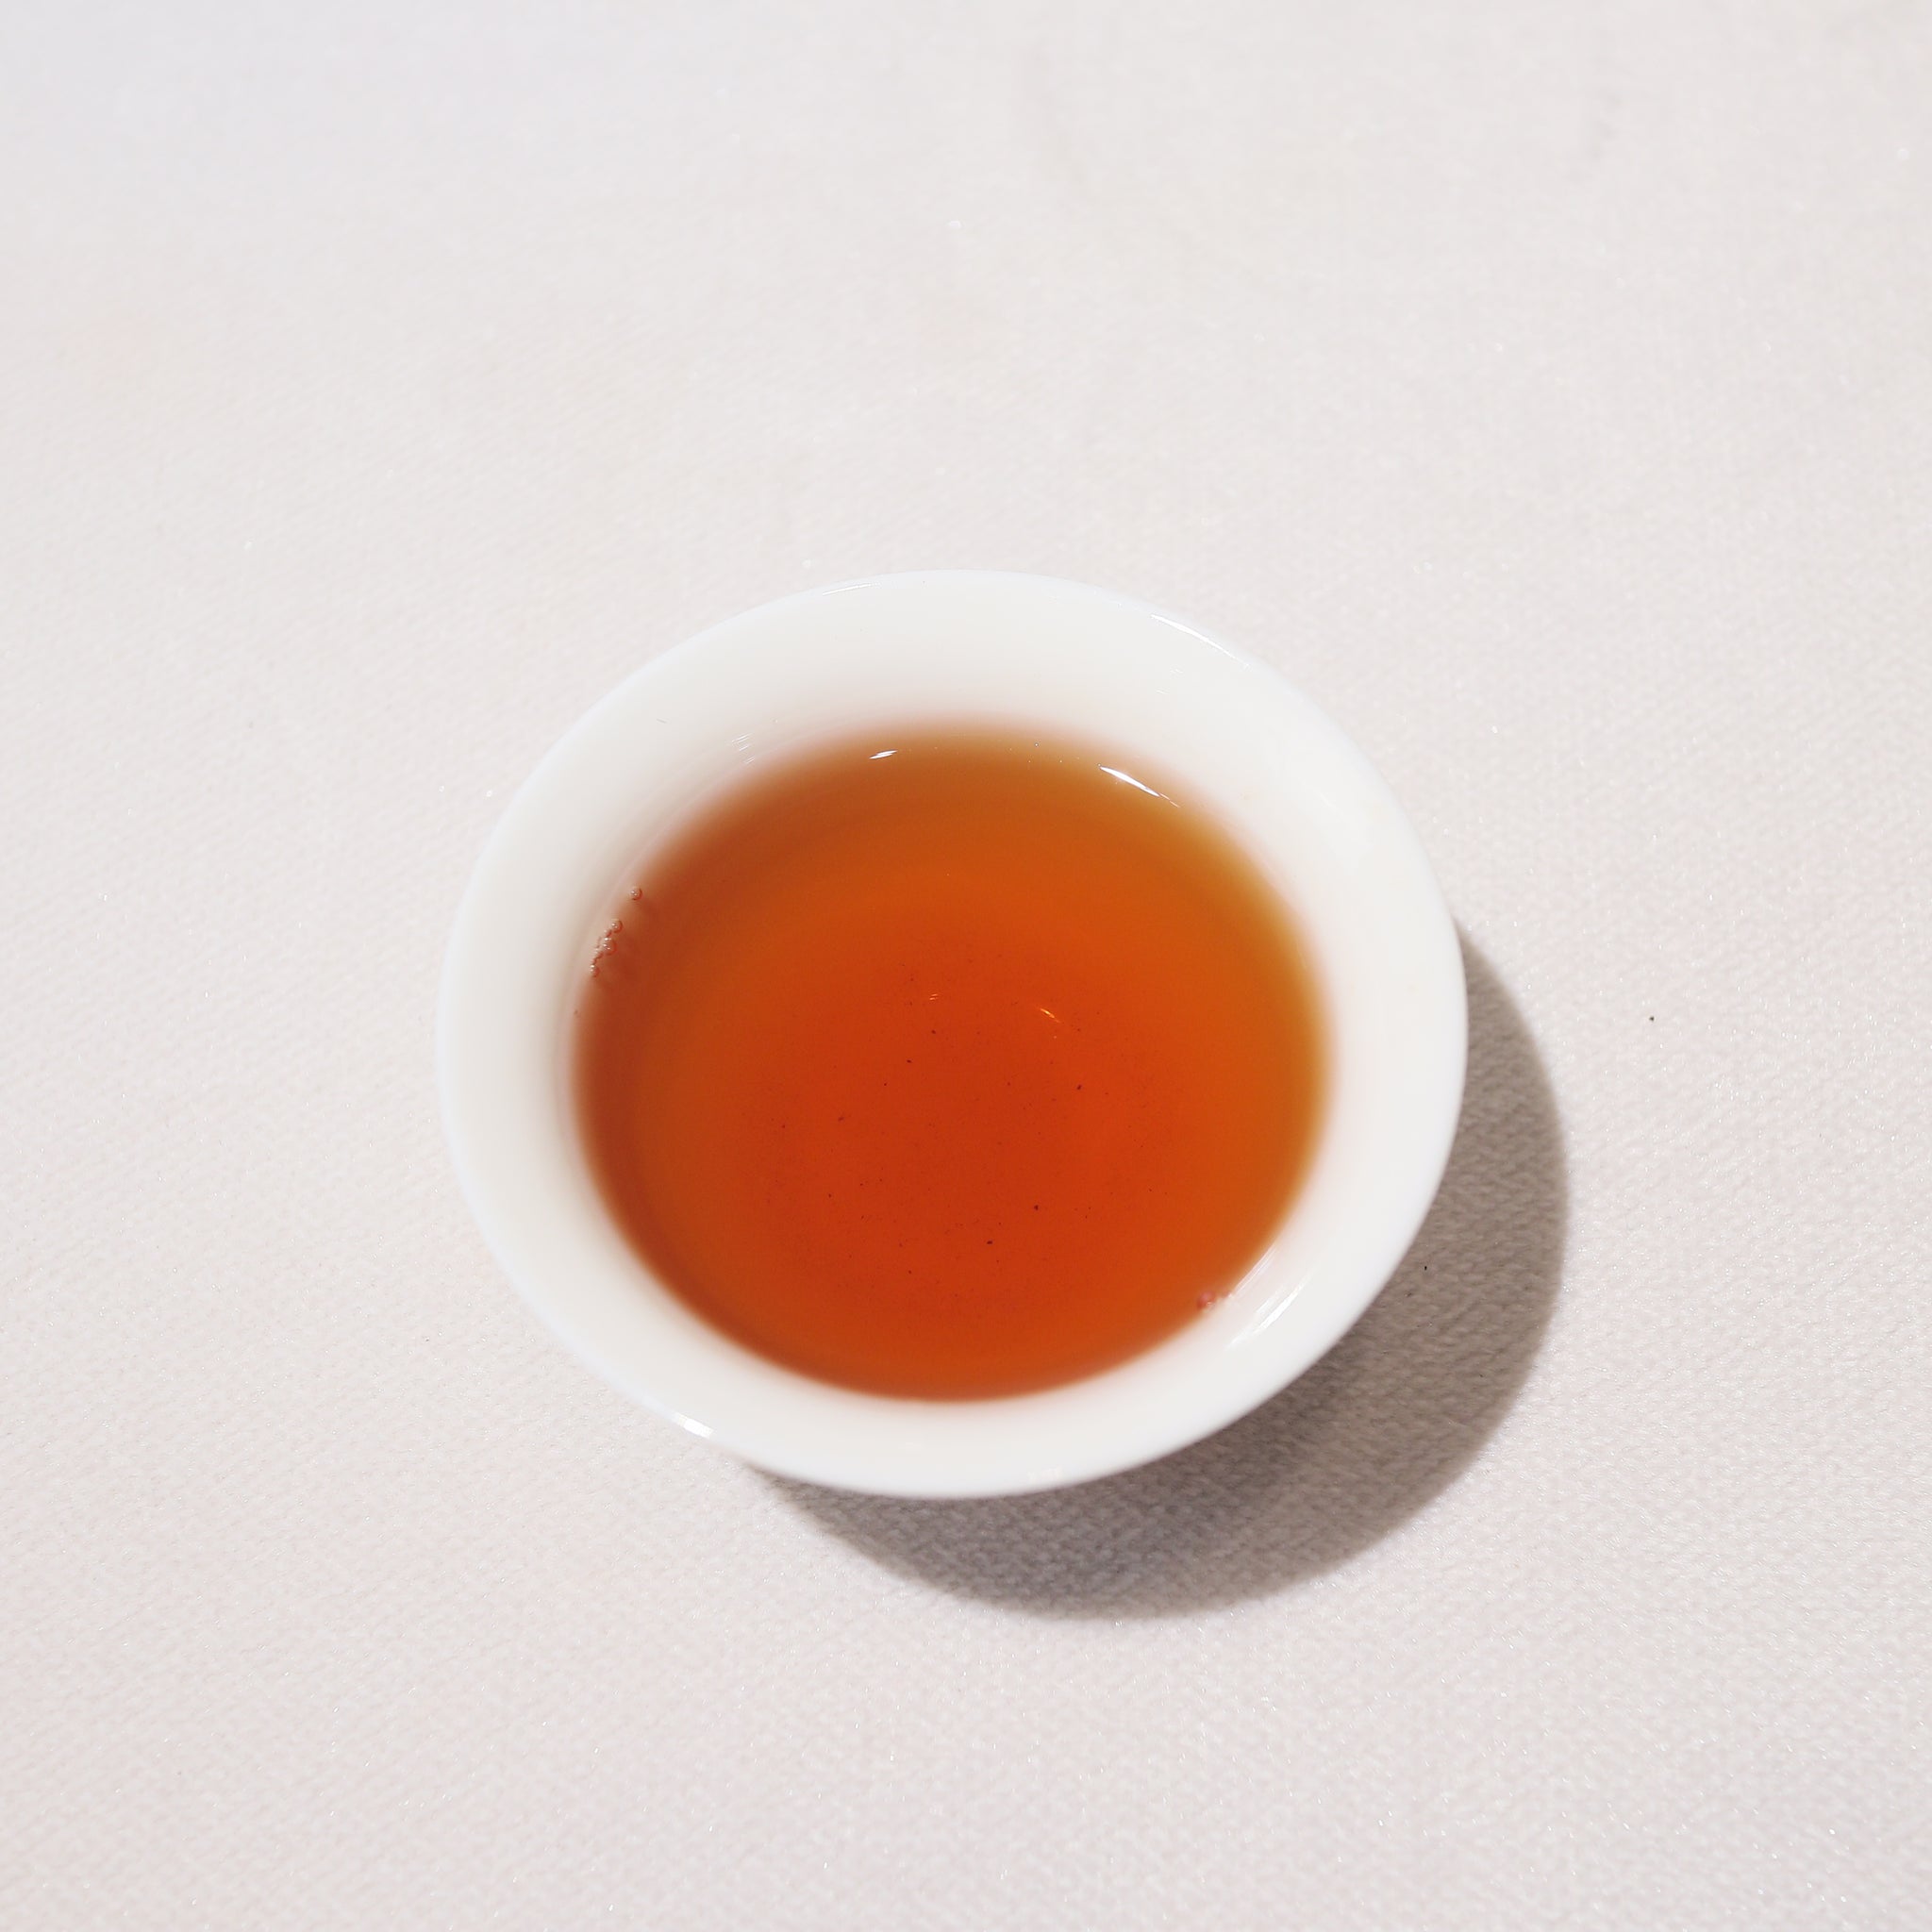 【九龍窠純種大紅袍】武夷正岩岩茶 20克裝